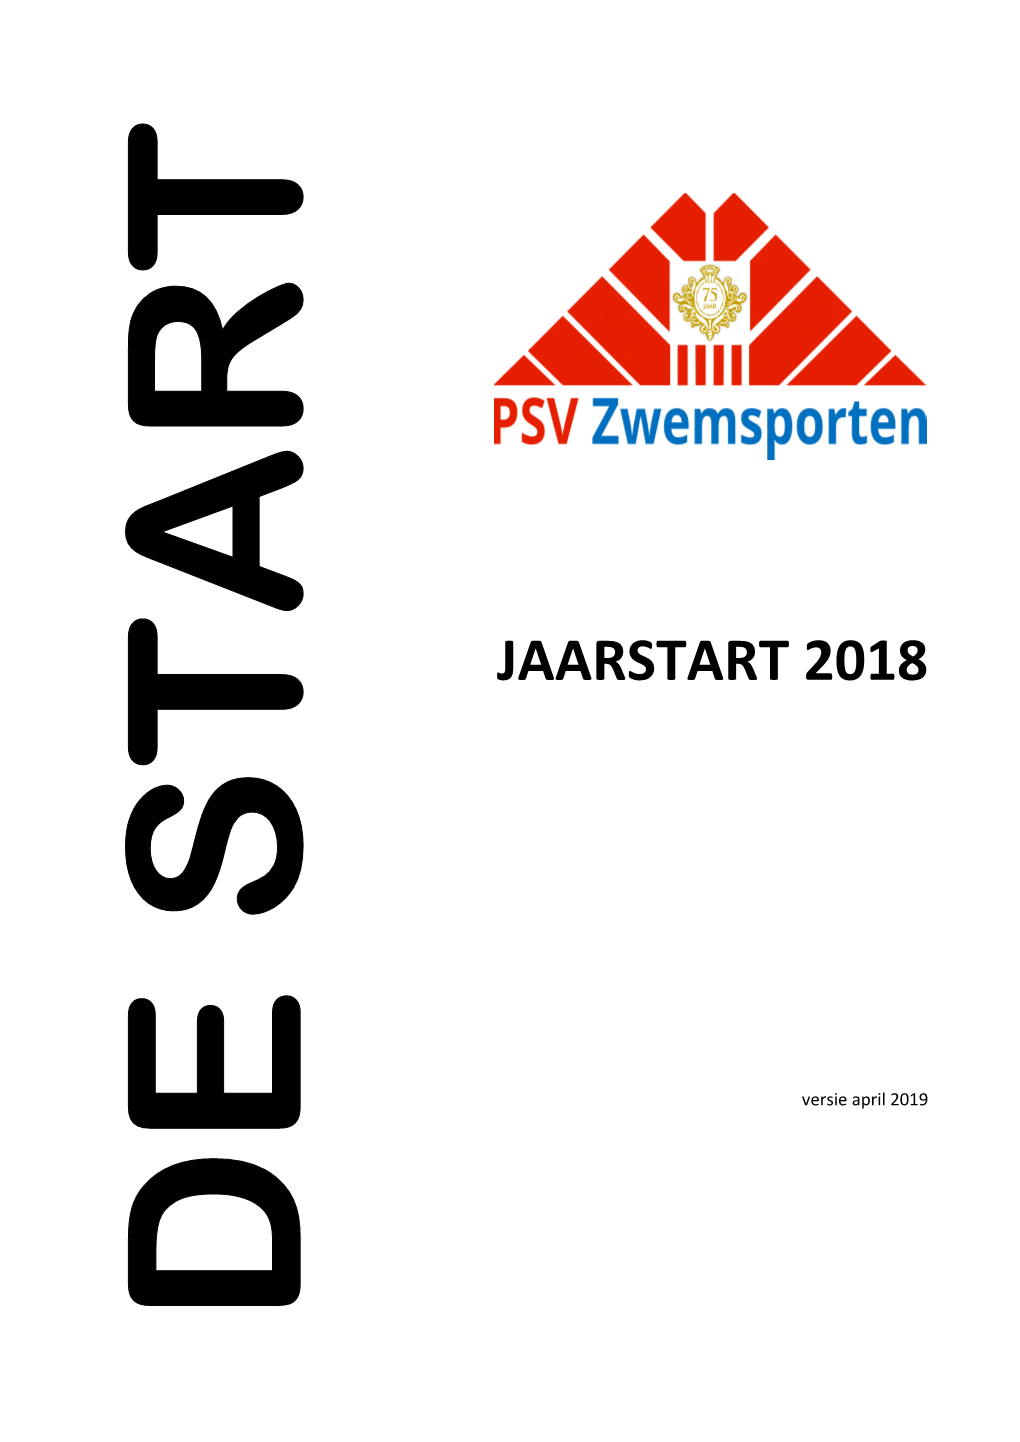 Jaarstart 2018